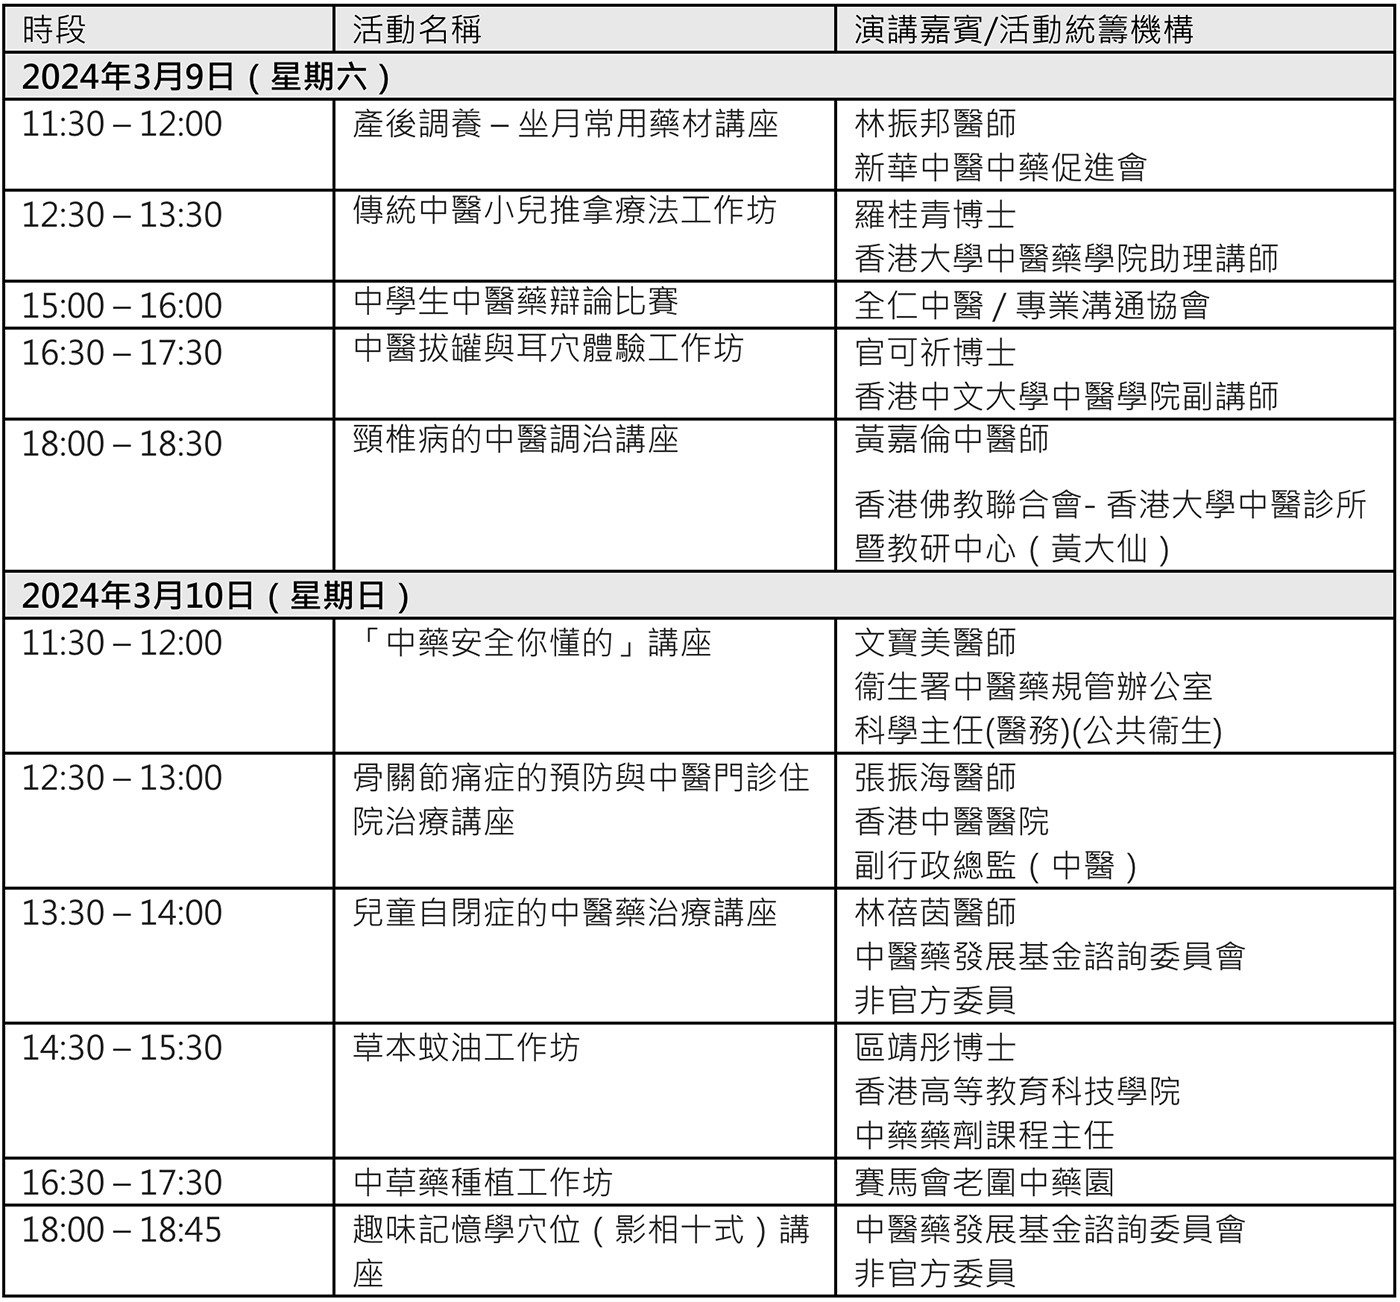 「中醫藥發展基金」成果展活動節目表（2024年3月9日至10日）